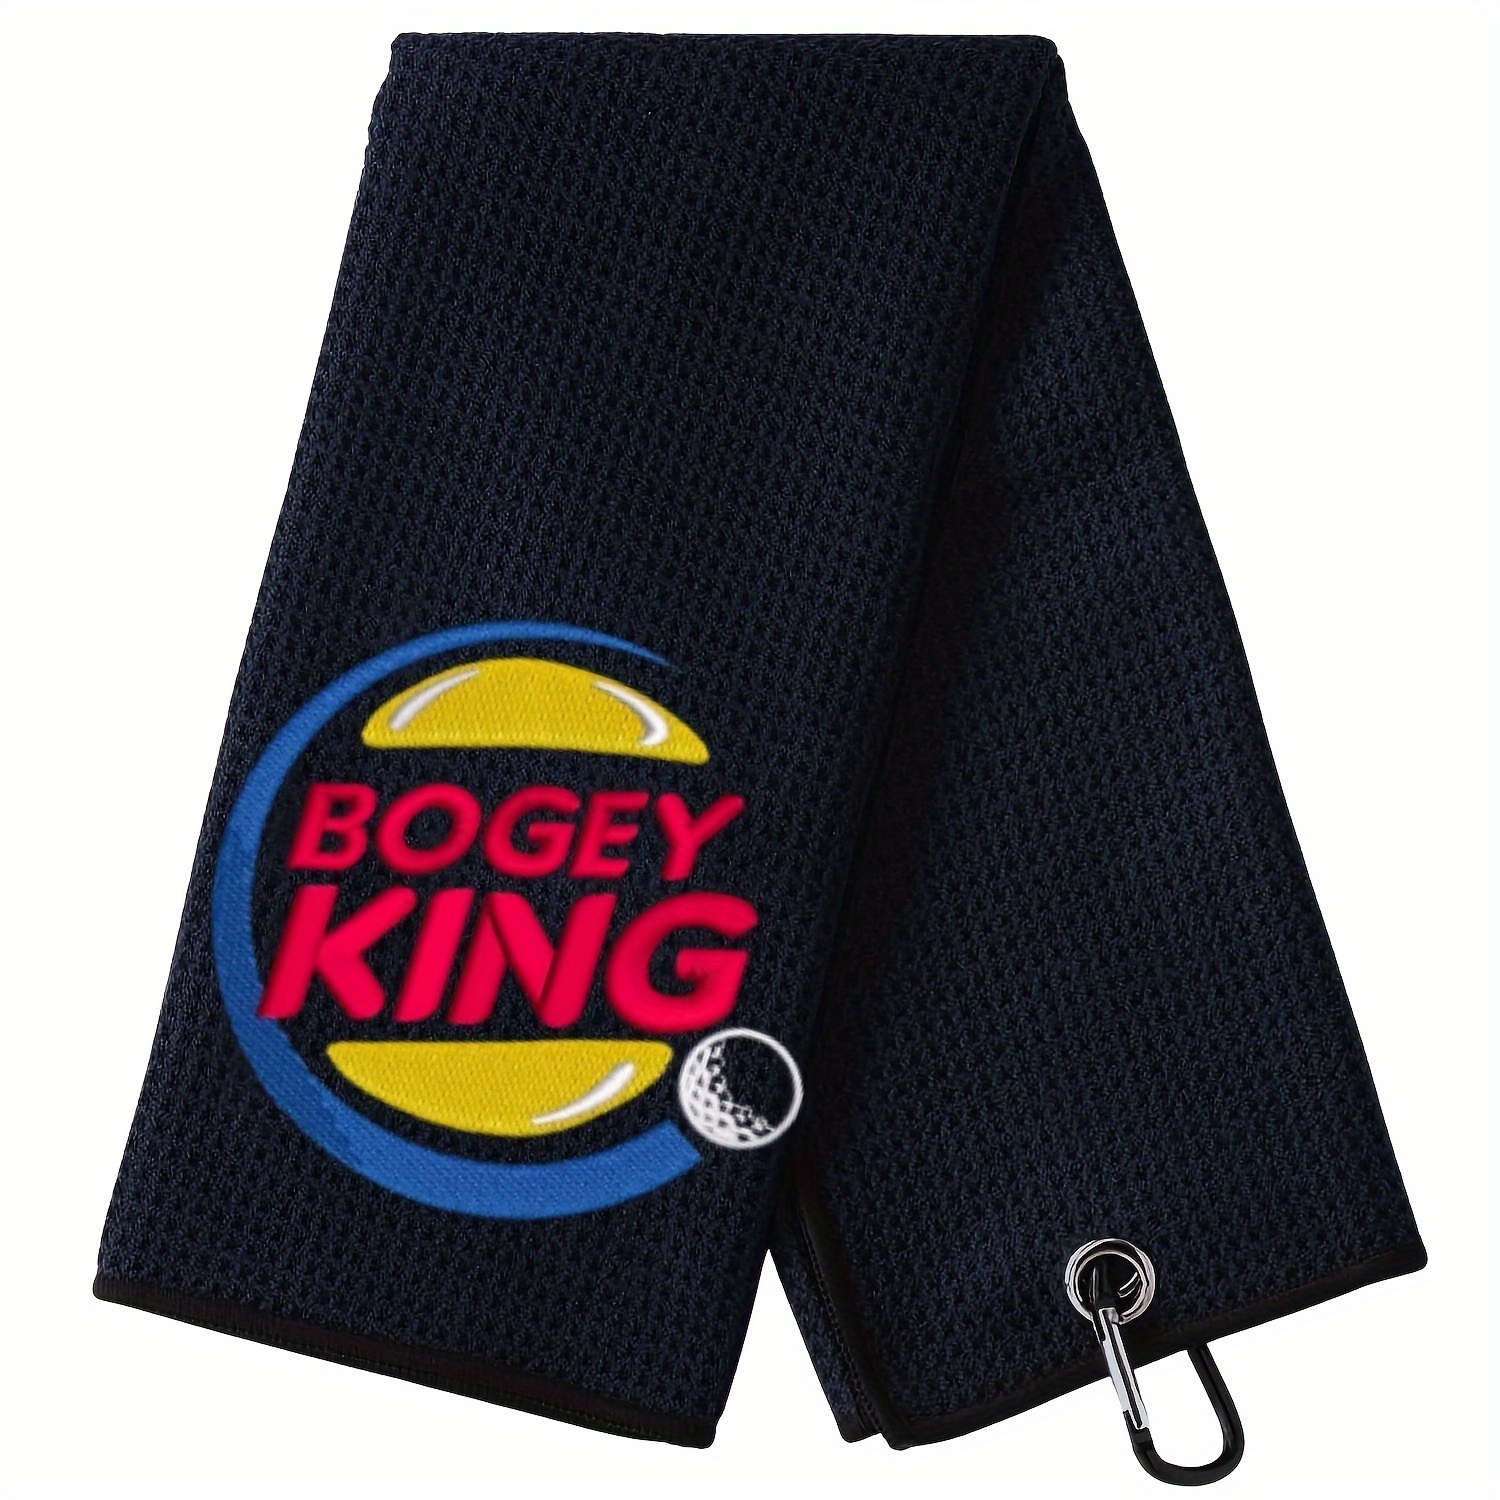 

Serviette de golf Bogey King - Serviette de golf brodée amusante - Cadeau de golf pour hommes ou femmes - Accessoires de golf pour femmes ou hommes, cadeau de la fête des pères